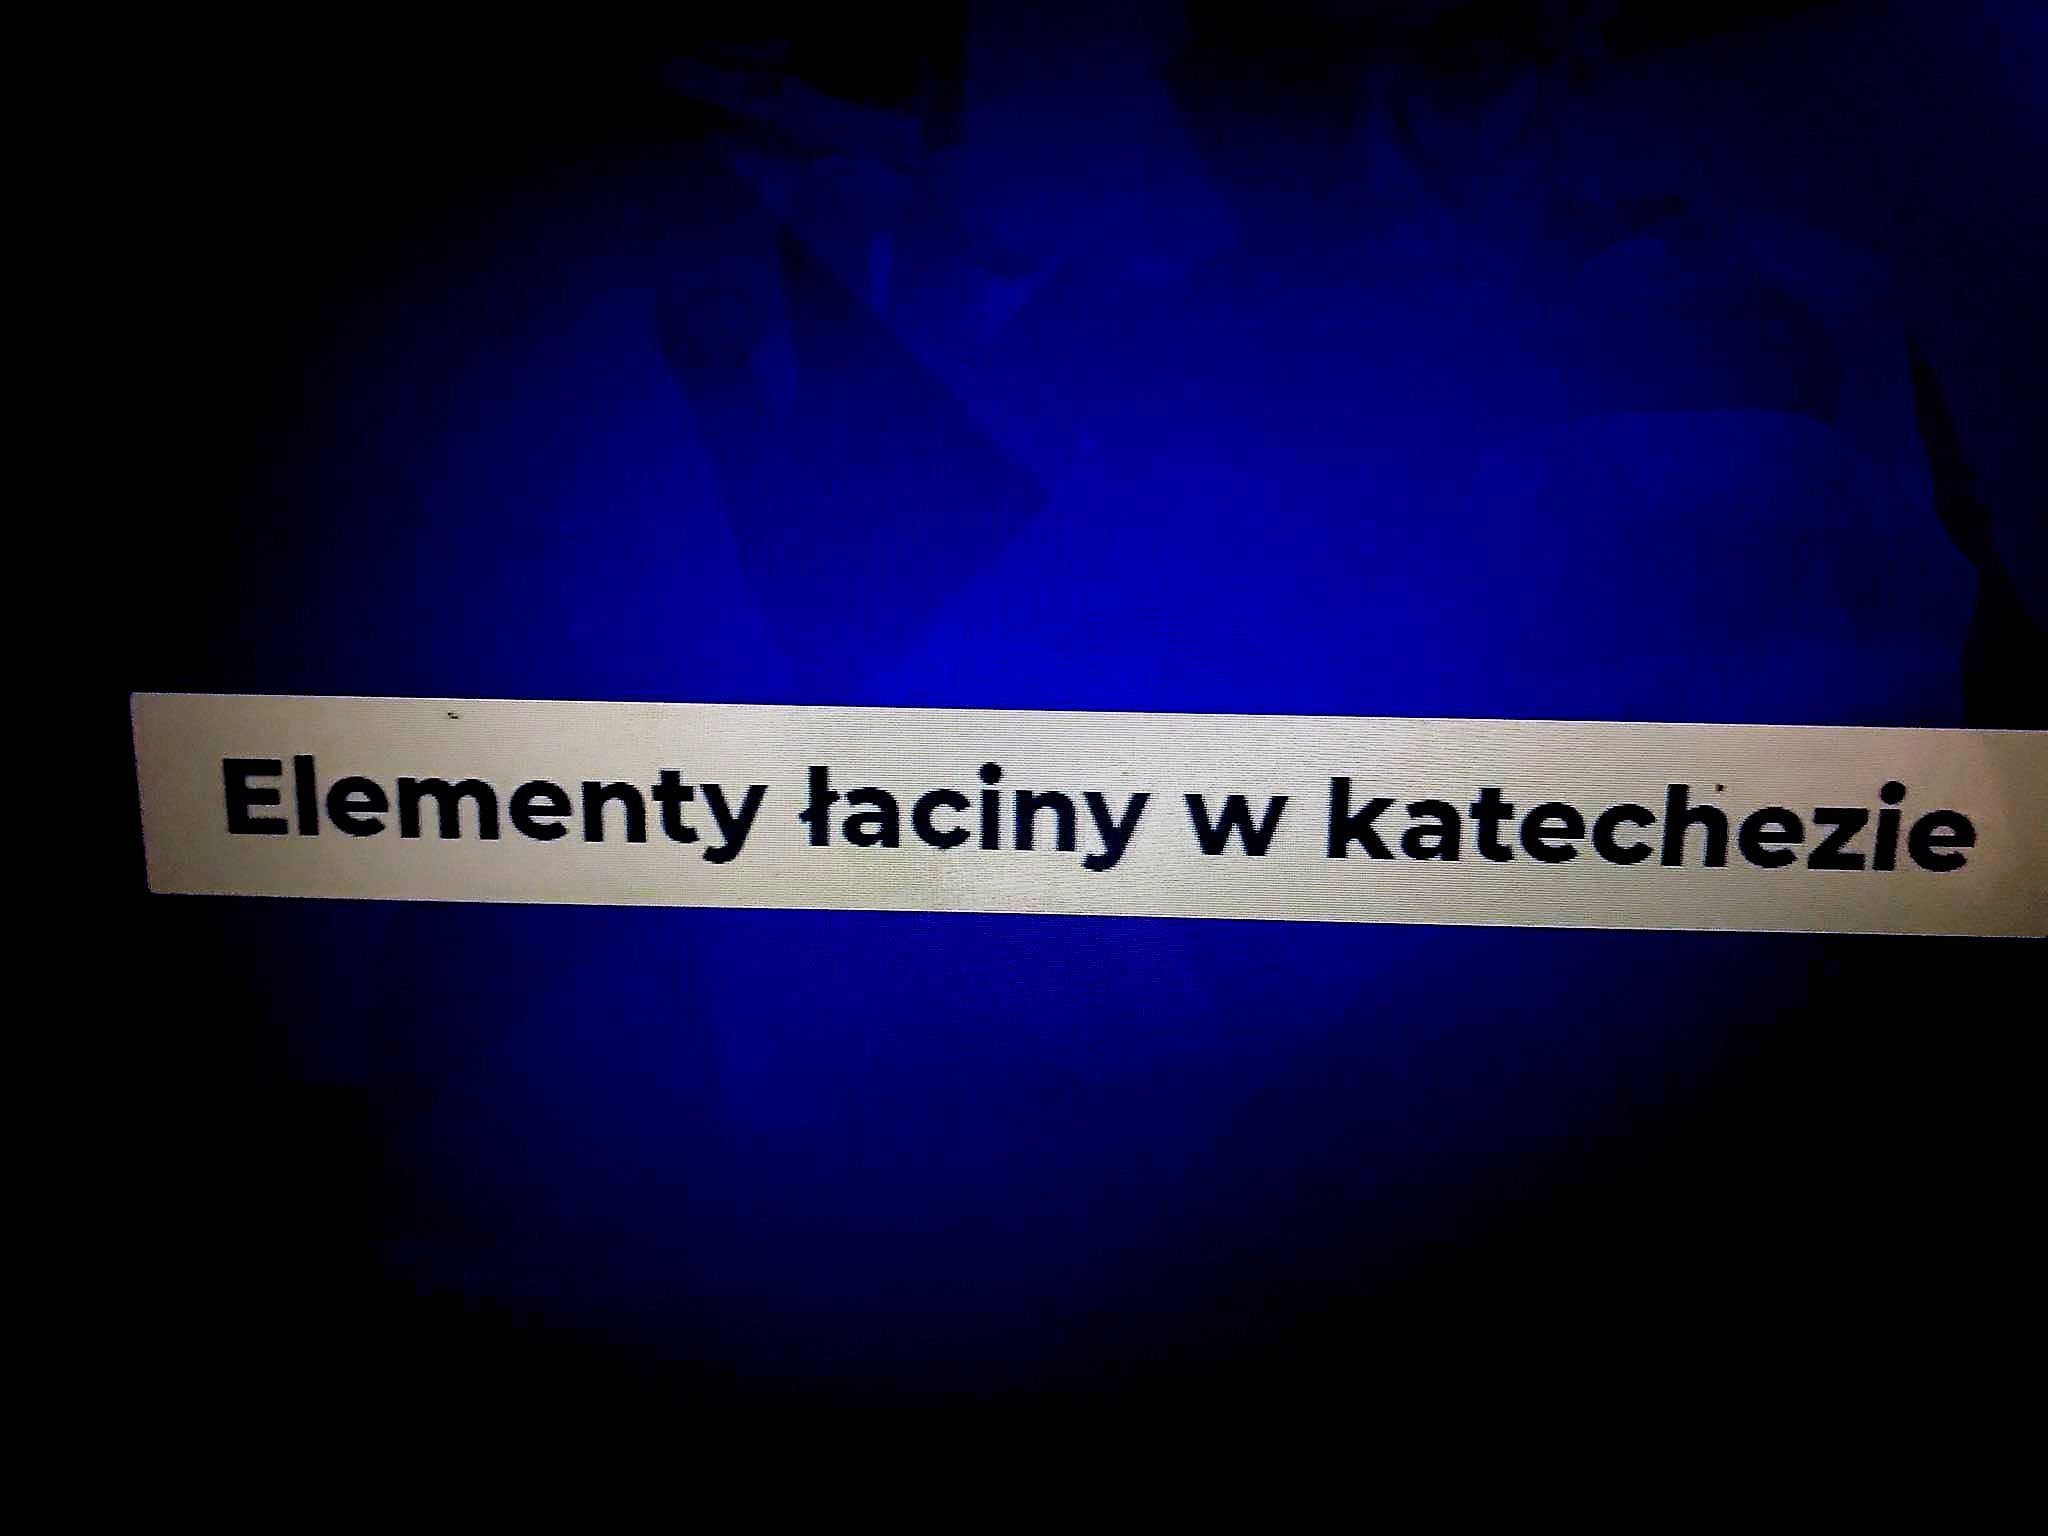 "Elementy Łaciny w Katechezie"